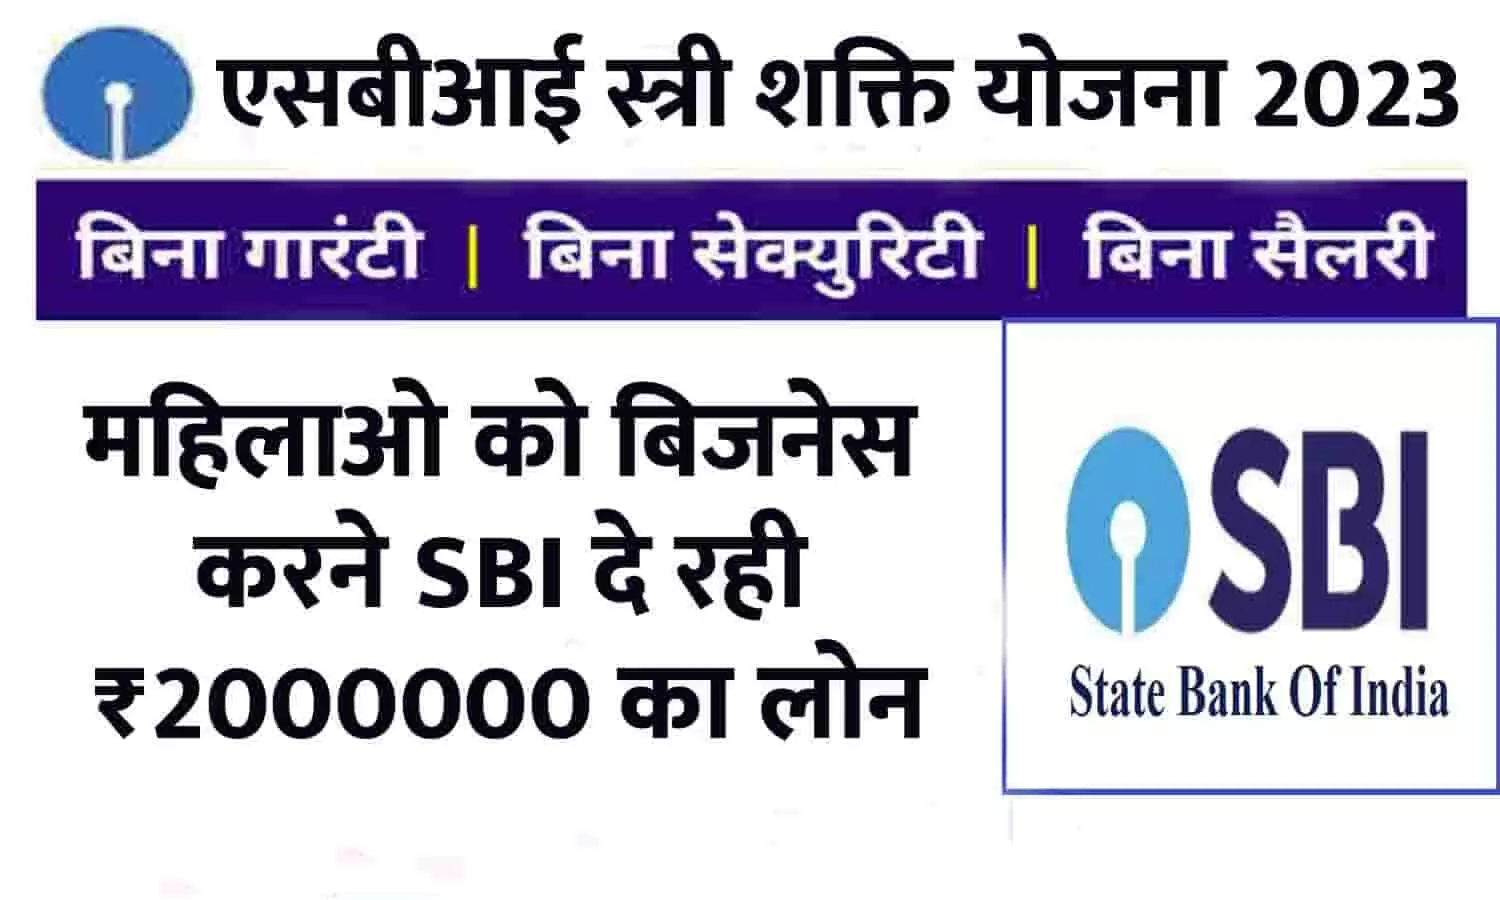 SBI Stree Shakti Yojna In Hindi 2023: महिलाओं के लिए गुड न्यूज़! बिजनेस करने SBI दे रही ₹2000000 का लोन, ऐसे करे Oline आवेदन